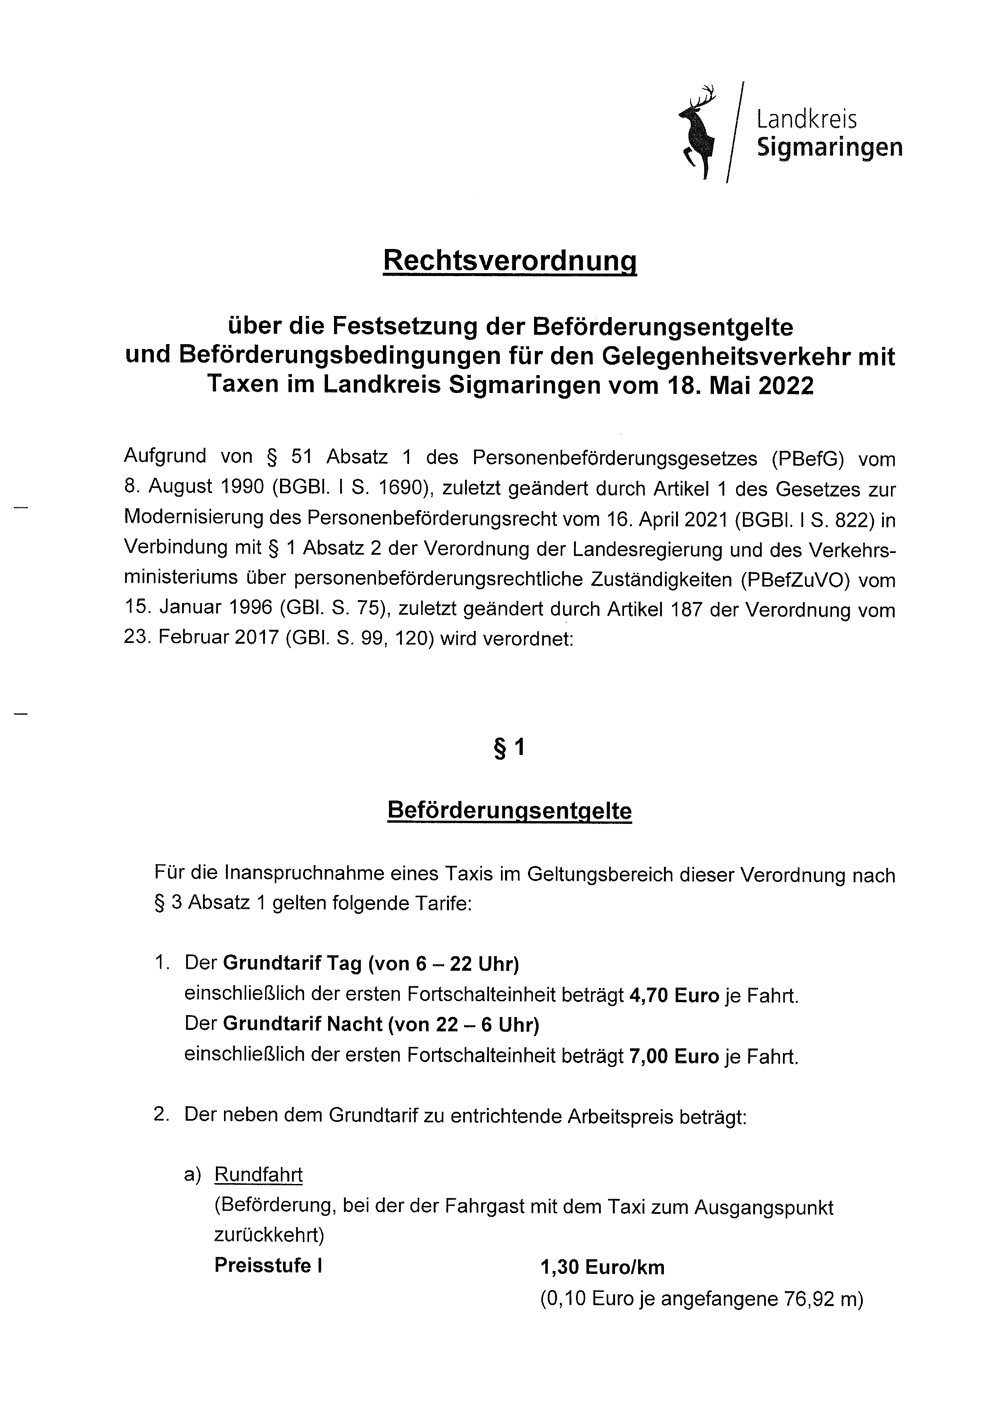 Rechtsverordnung des Landkreises Sigmaringen